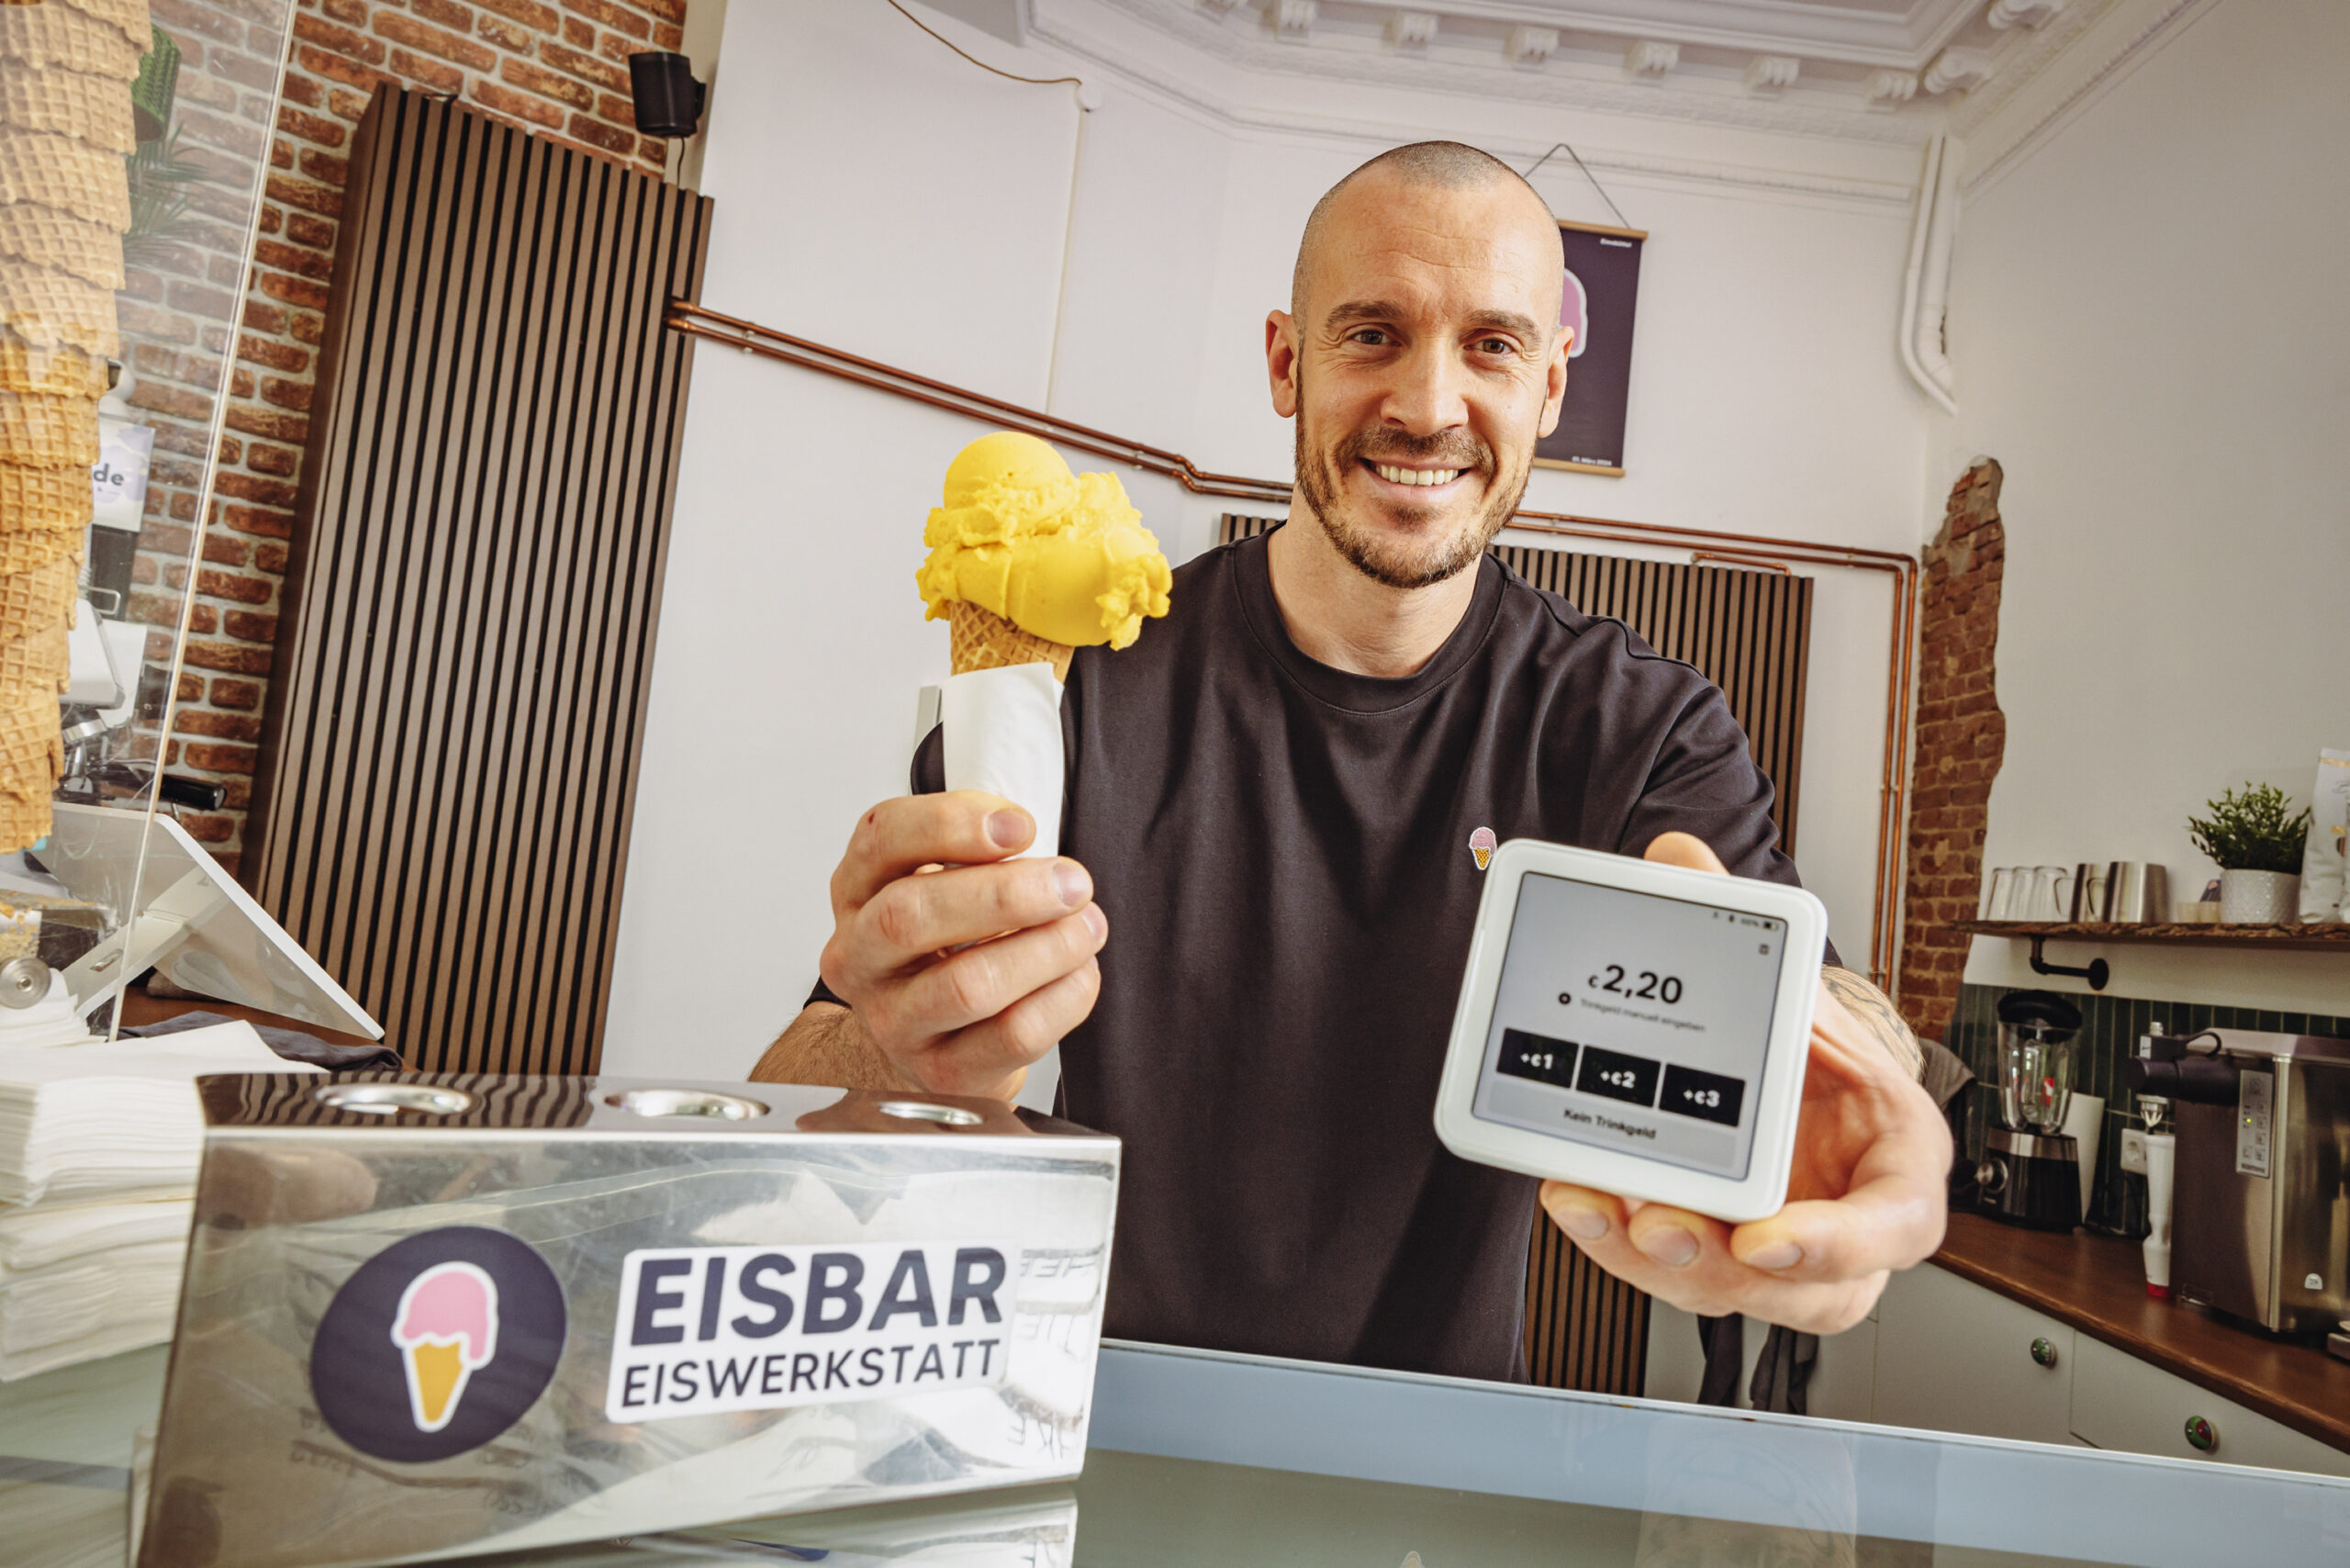 In der Eimsbütteler „Eisbar Eiswerkstatt“ kostet die Kugel Eis 2,20 Euro. Per Karte kann dazu bequem Trinkgeld gegeben werden.